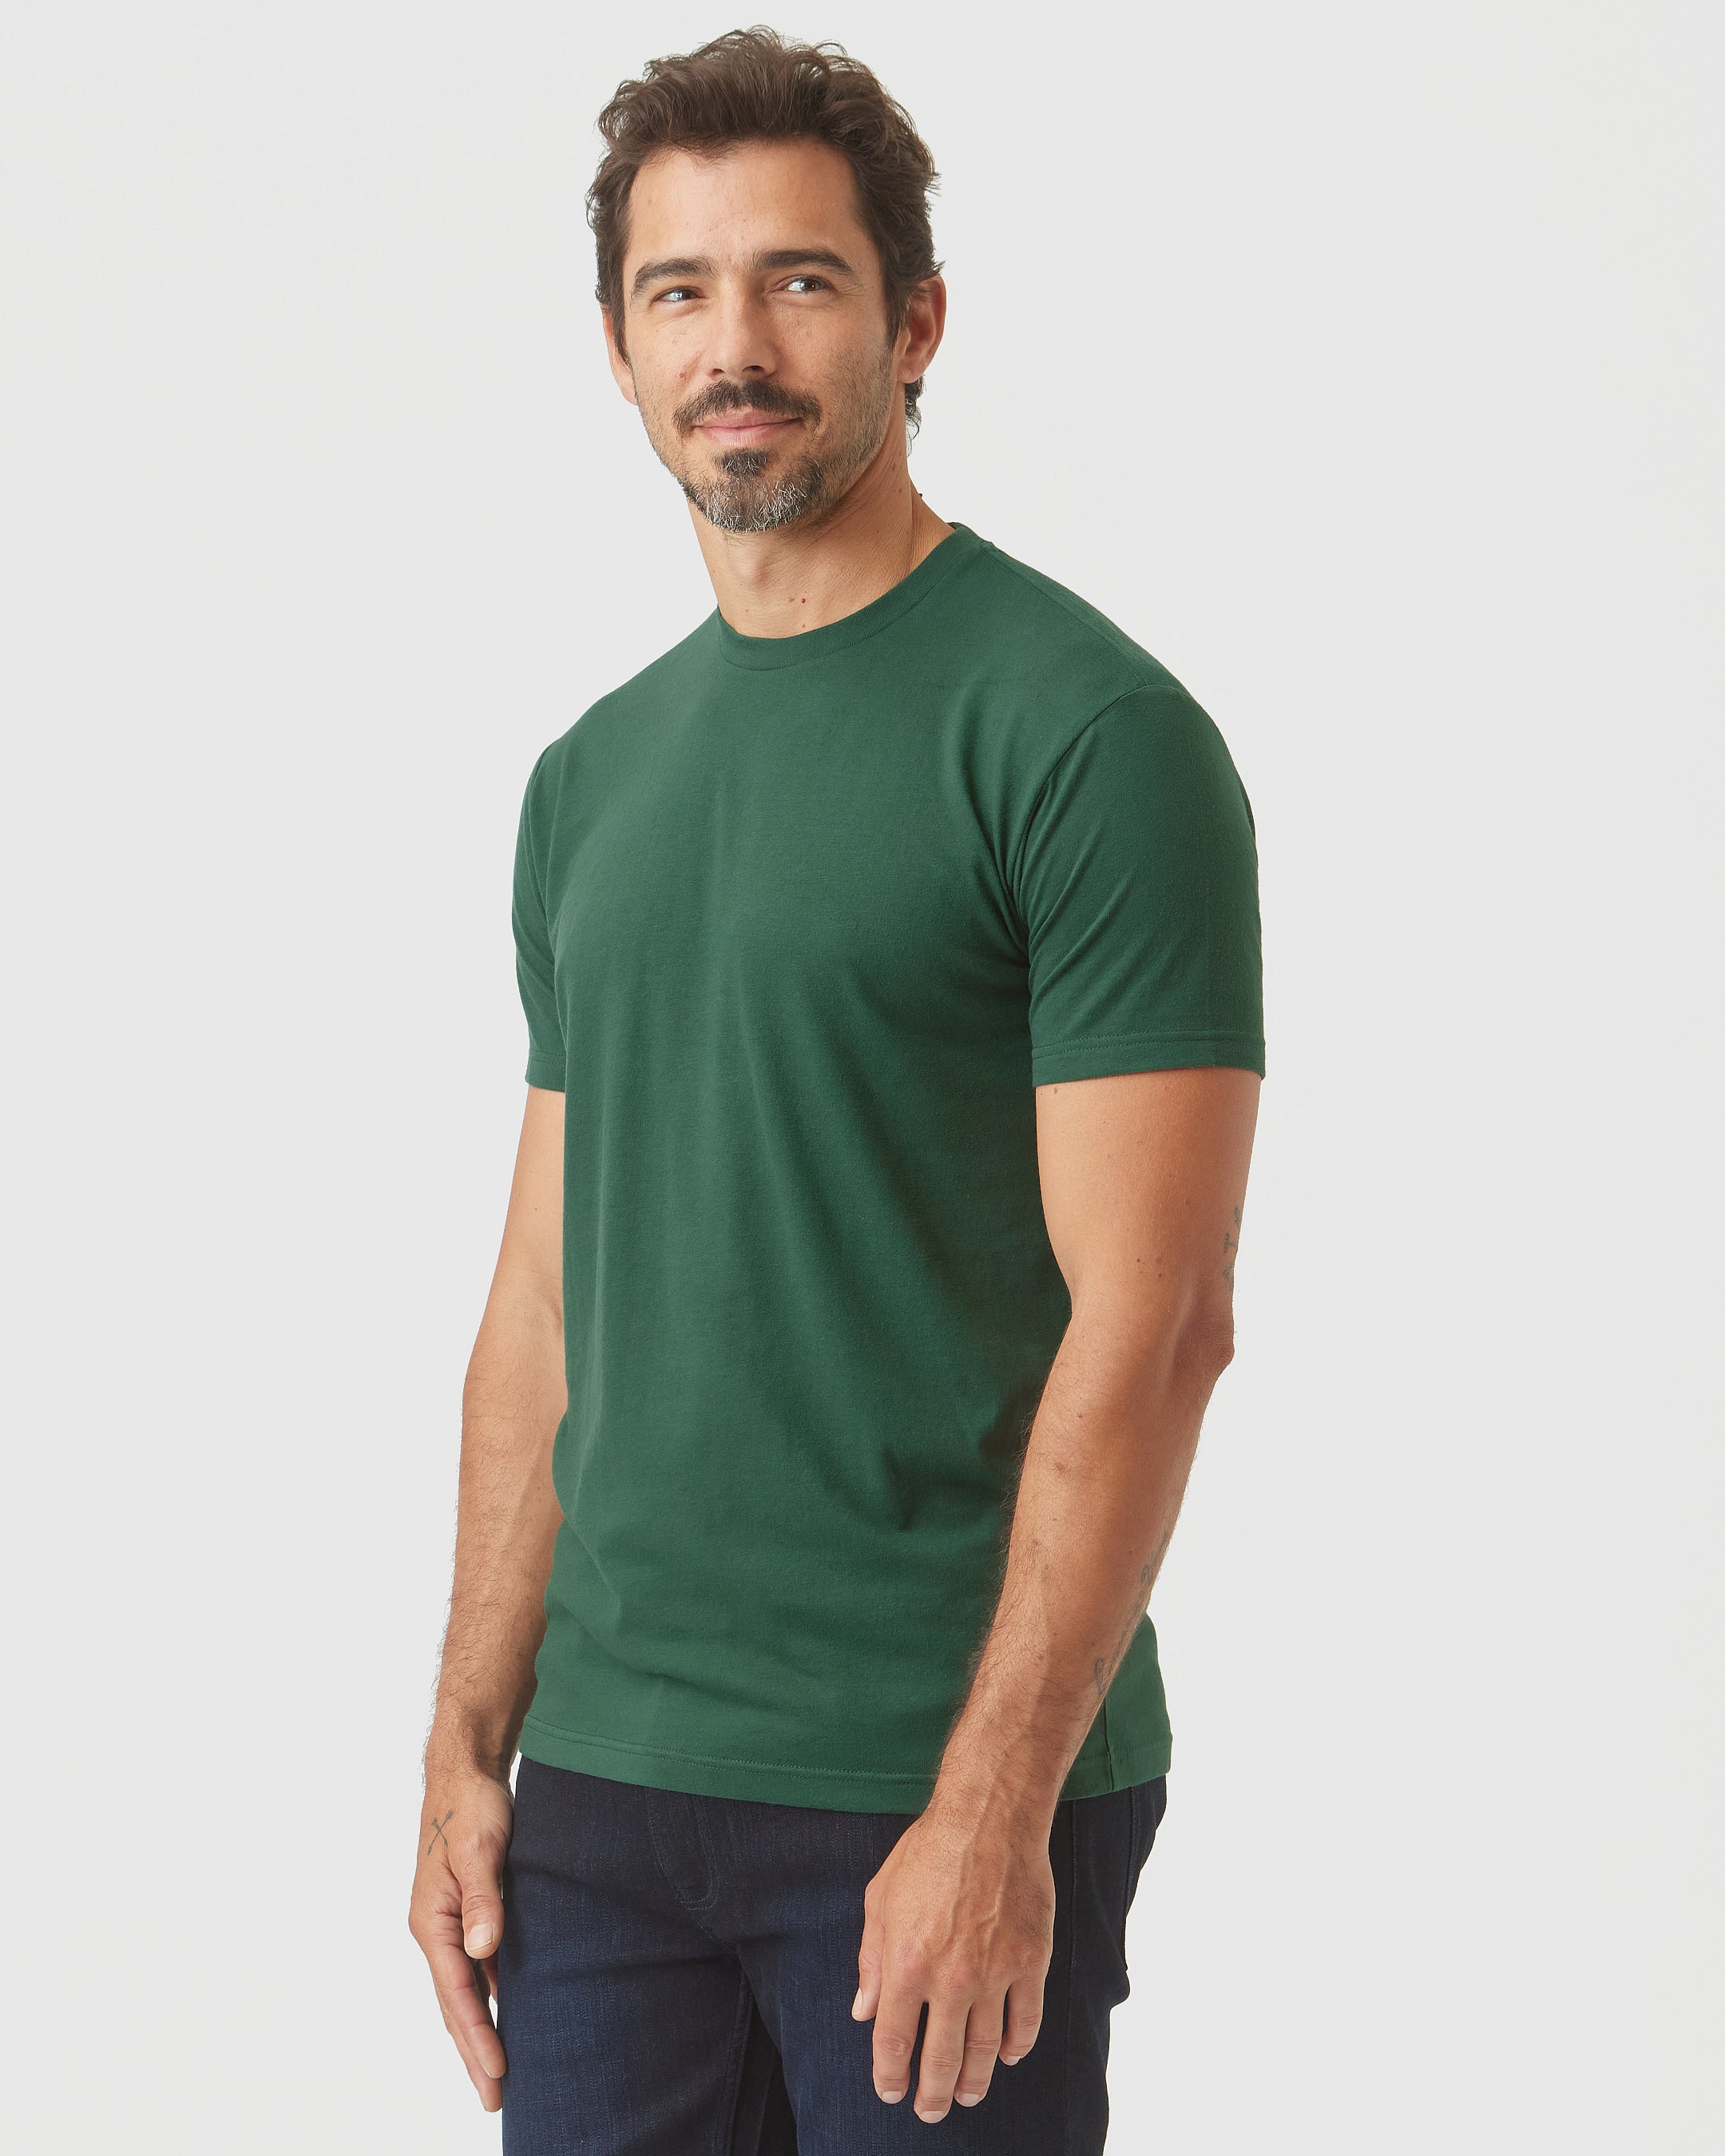 Moss Green Crew Neck T-Shirt